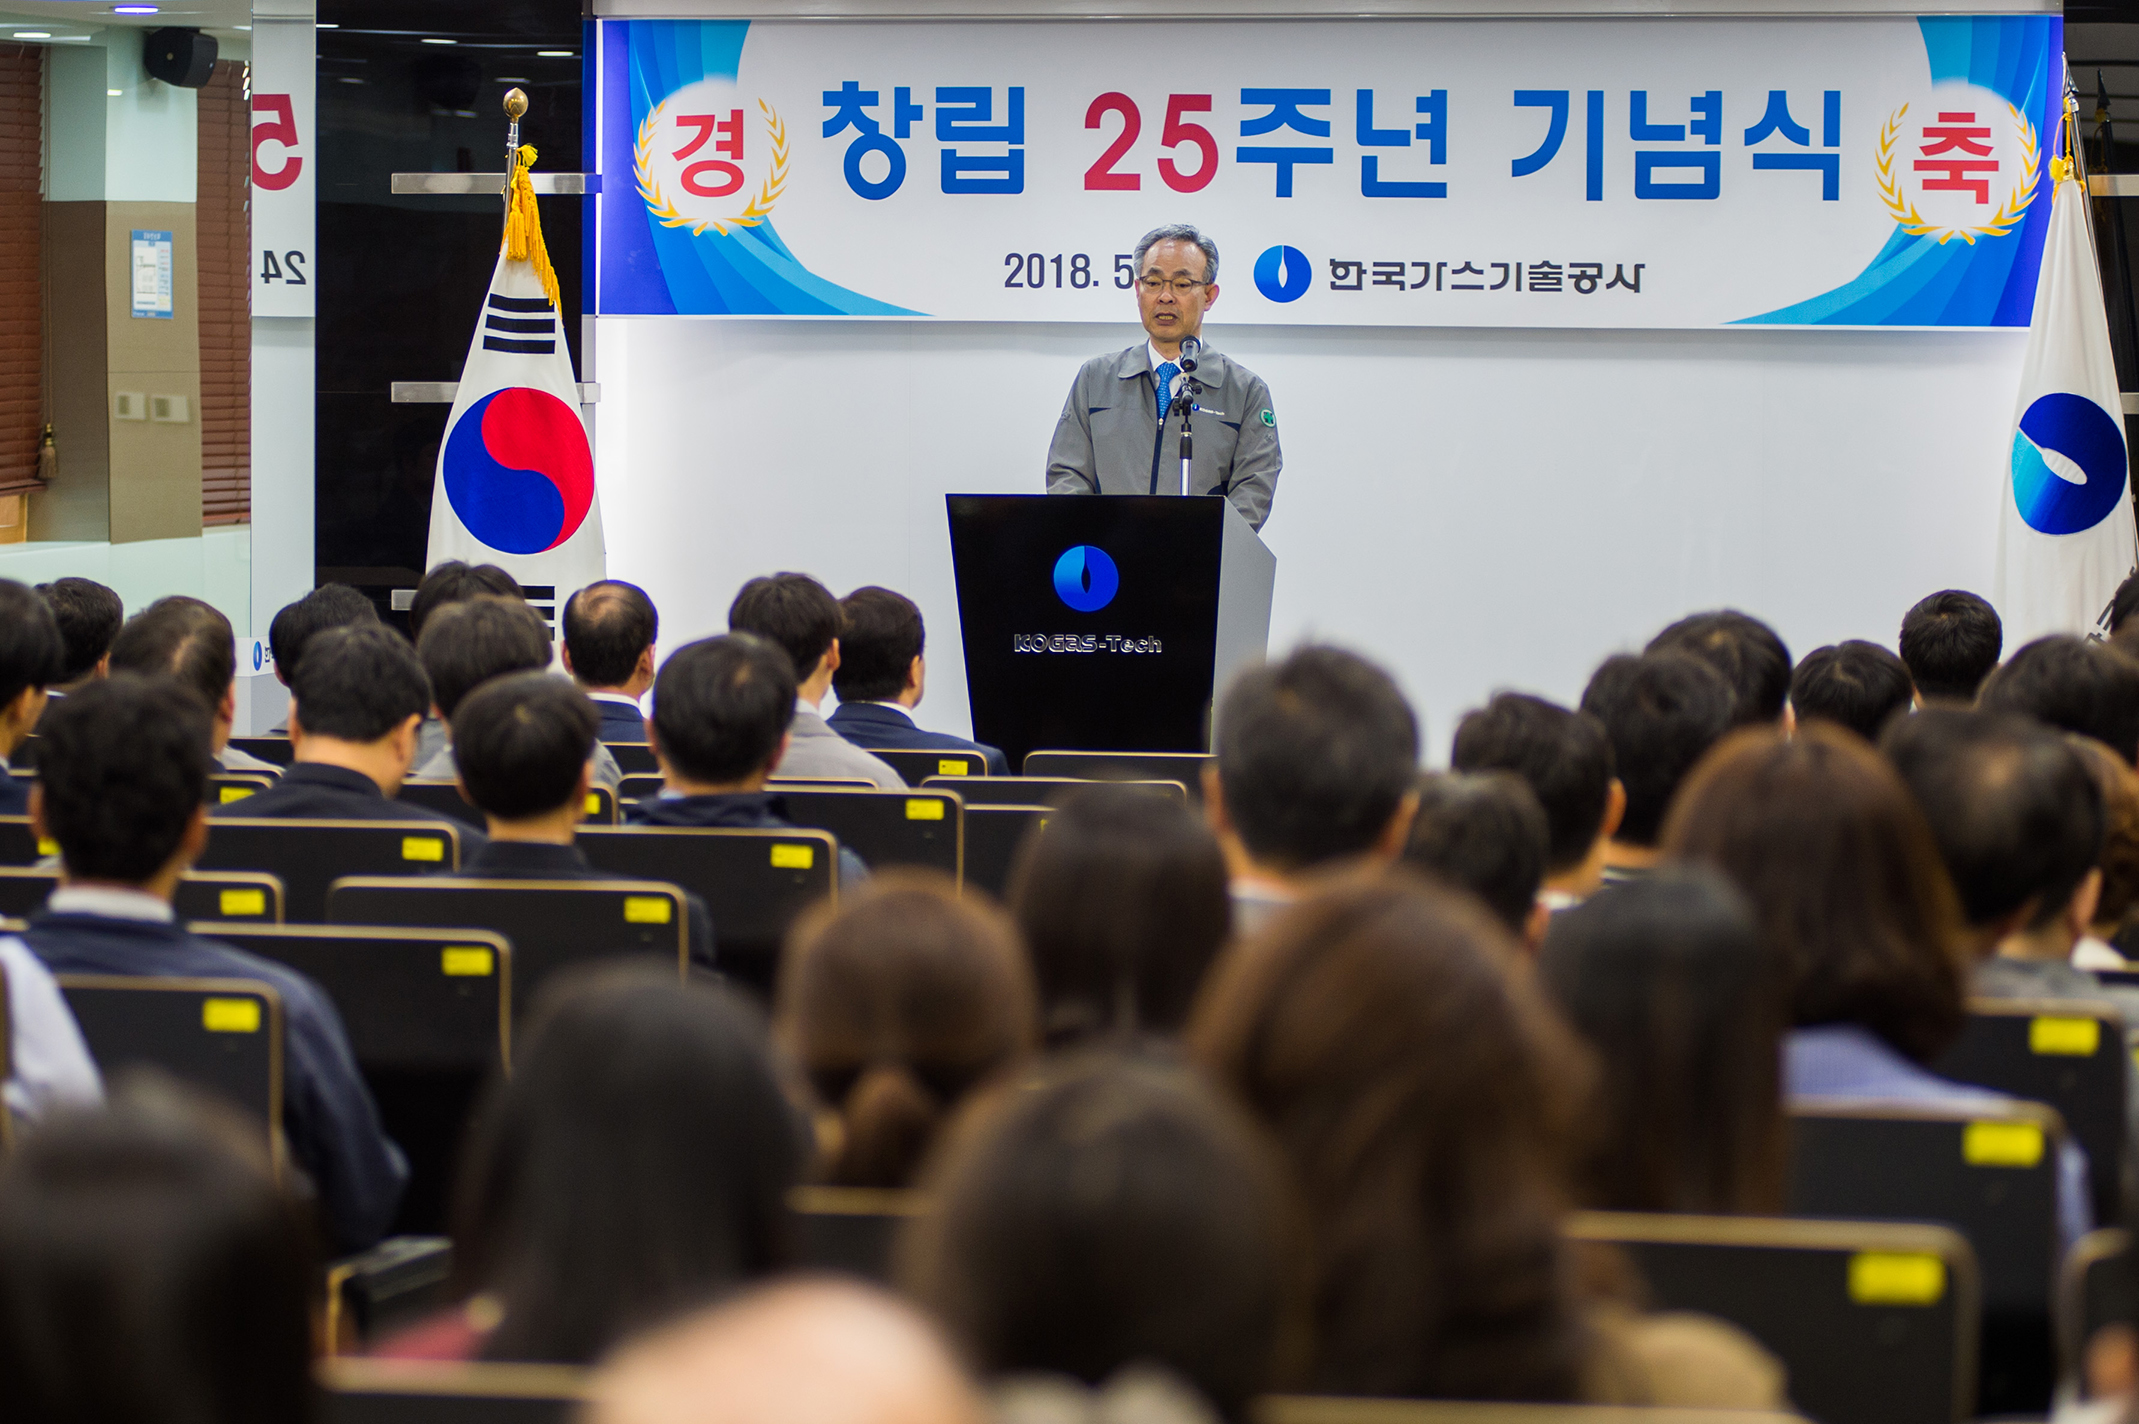 창립 제25주년 기념행사 개최